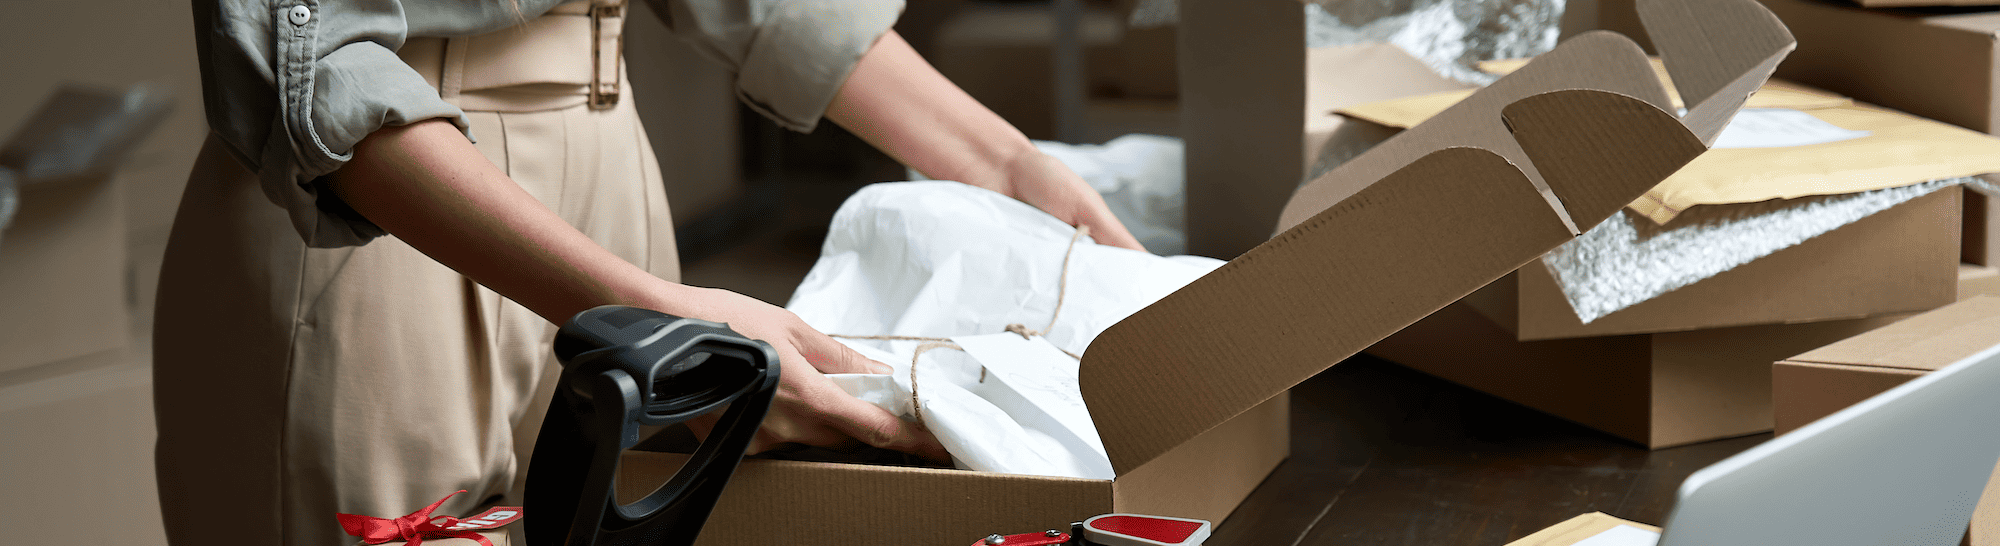 Order picken en packen: een praktische optimalisatiegids